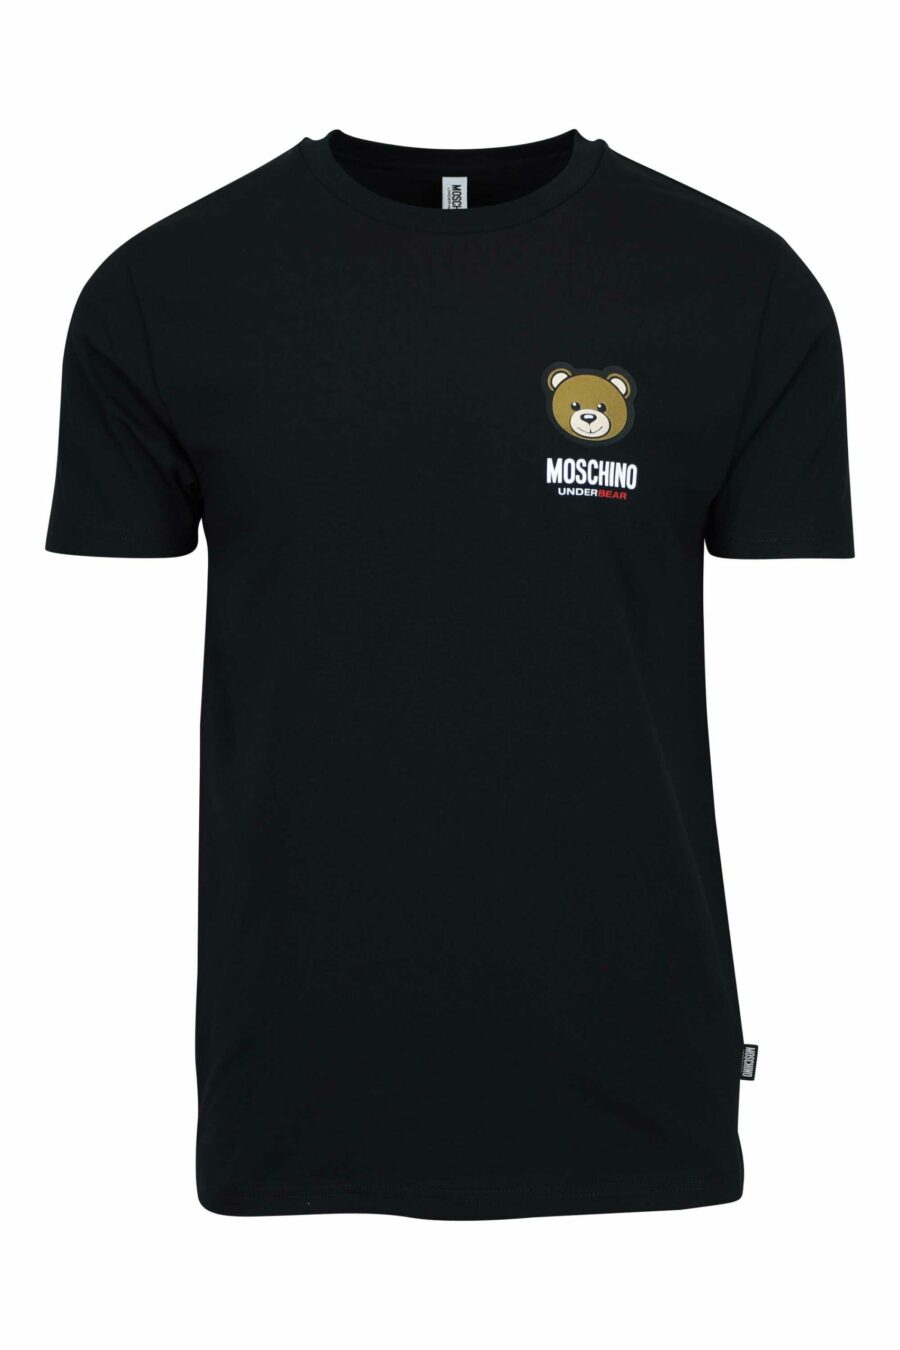 Schwarzes T-Shirt mit Mini-Logo-Bärenaufnäher "underbear" - 667113605739 skaliert